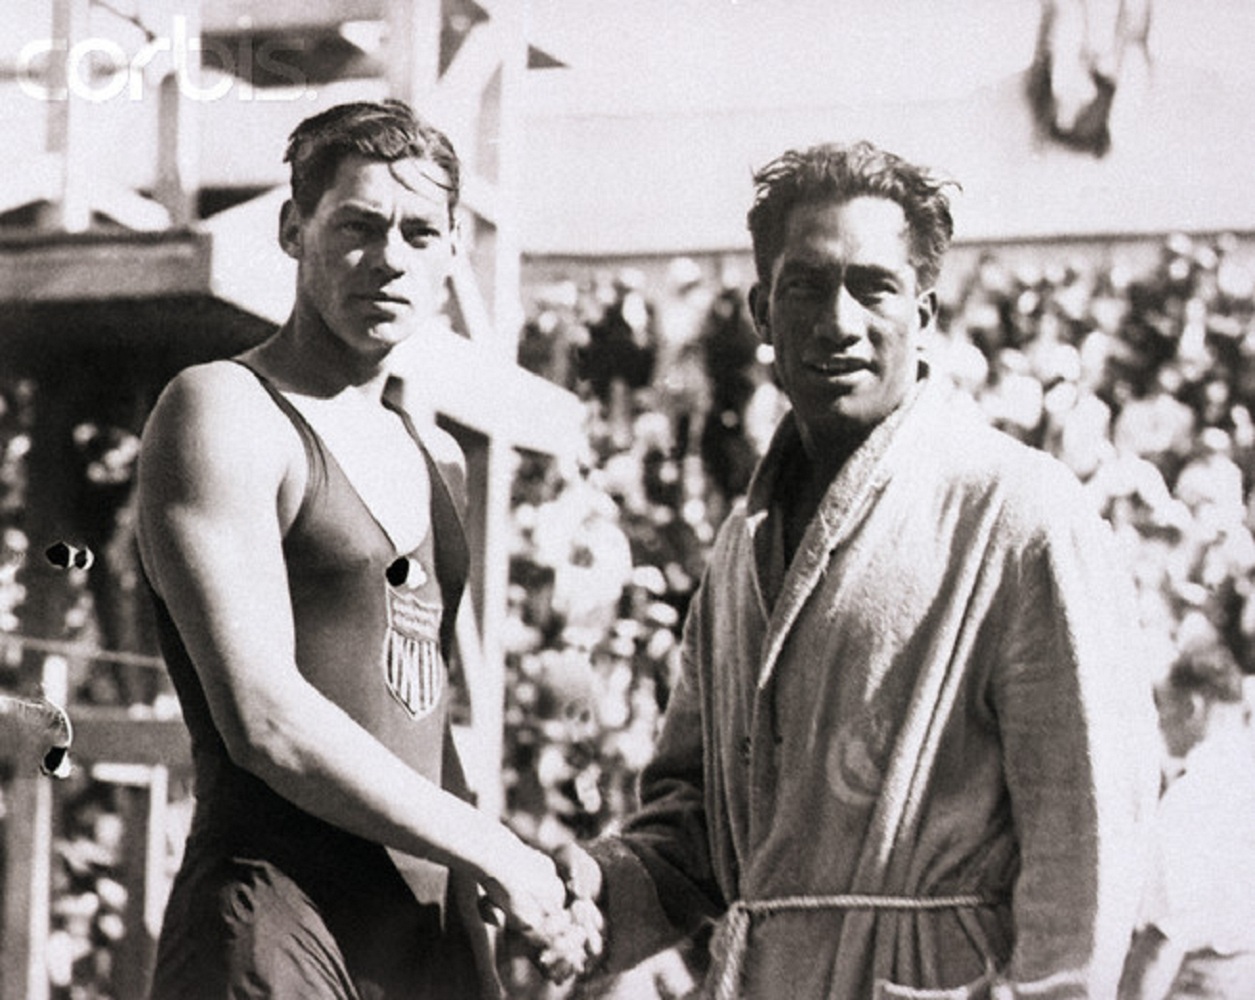 4.	Ο 'πατέρας' του surfing, Duke Kahanamoku με τον Weissmuller σε αγώνα κολύμβησης.